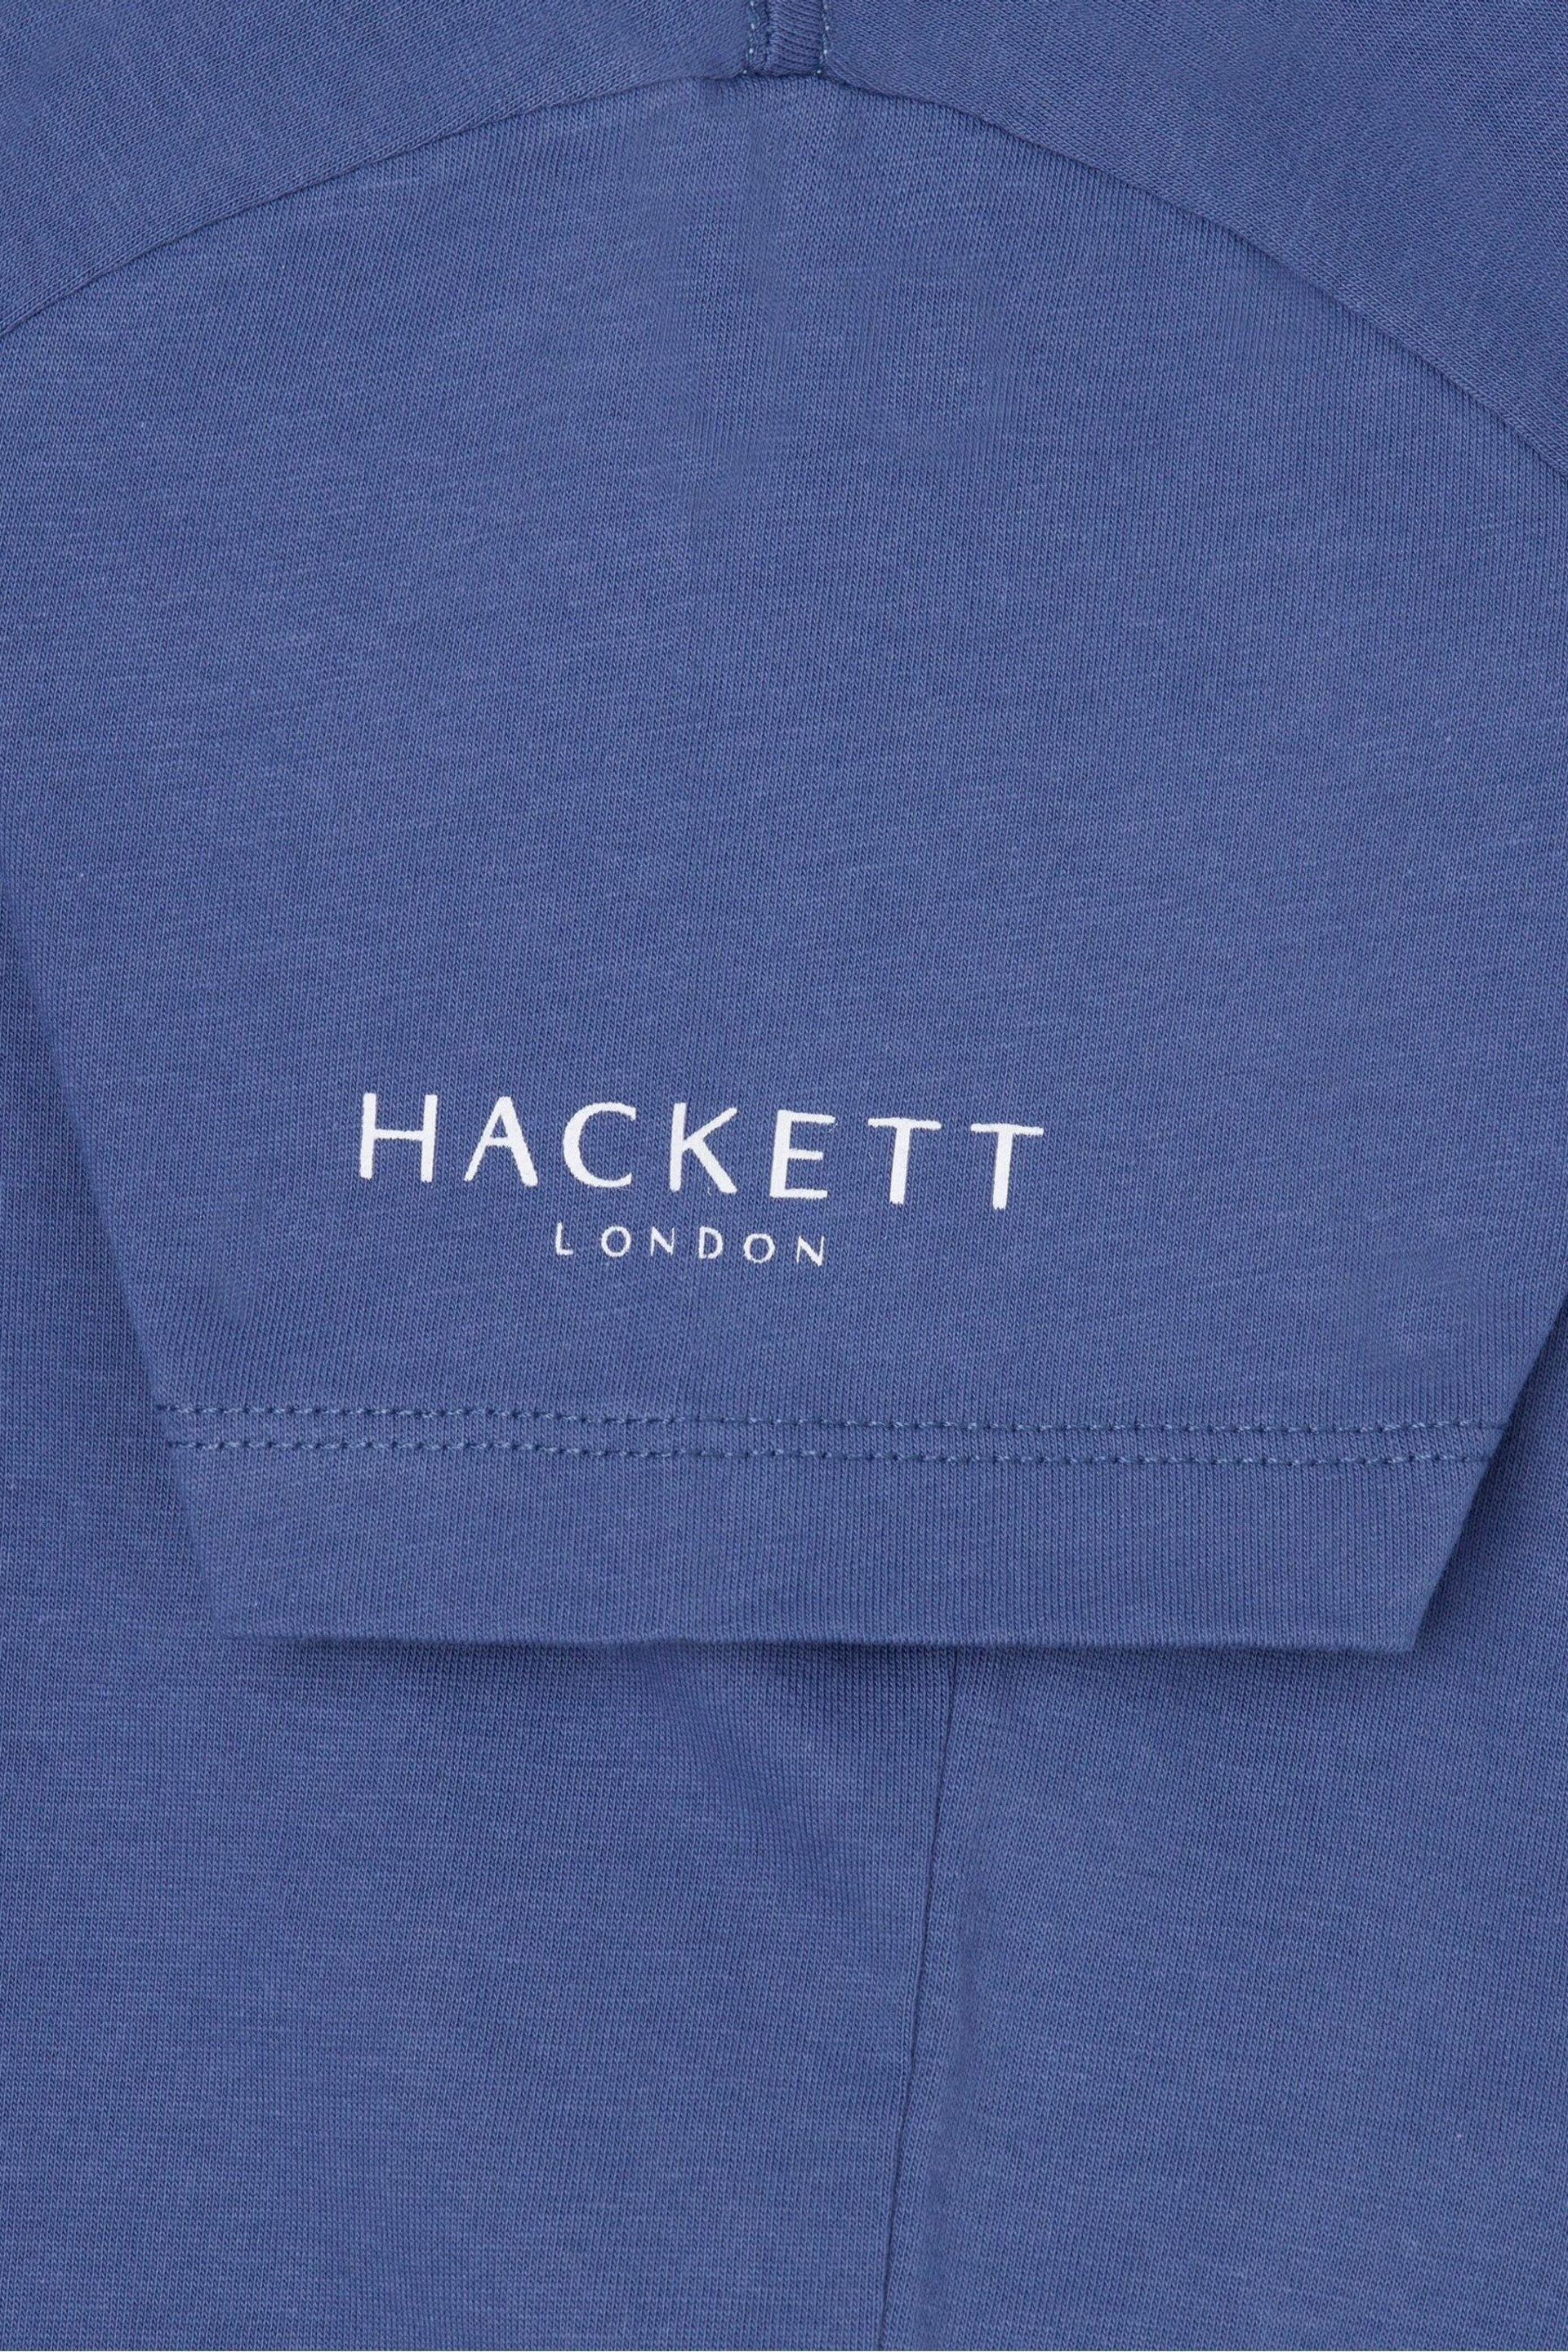 Hackett London Older Boys Blue Short Sleeve T-Shirt - Image 3 of 3